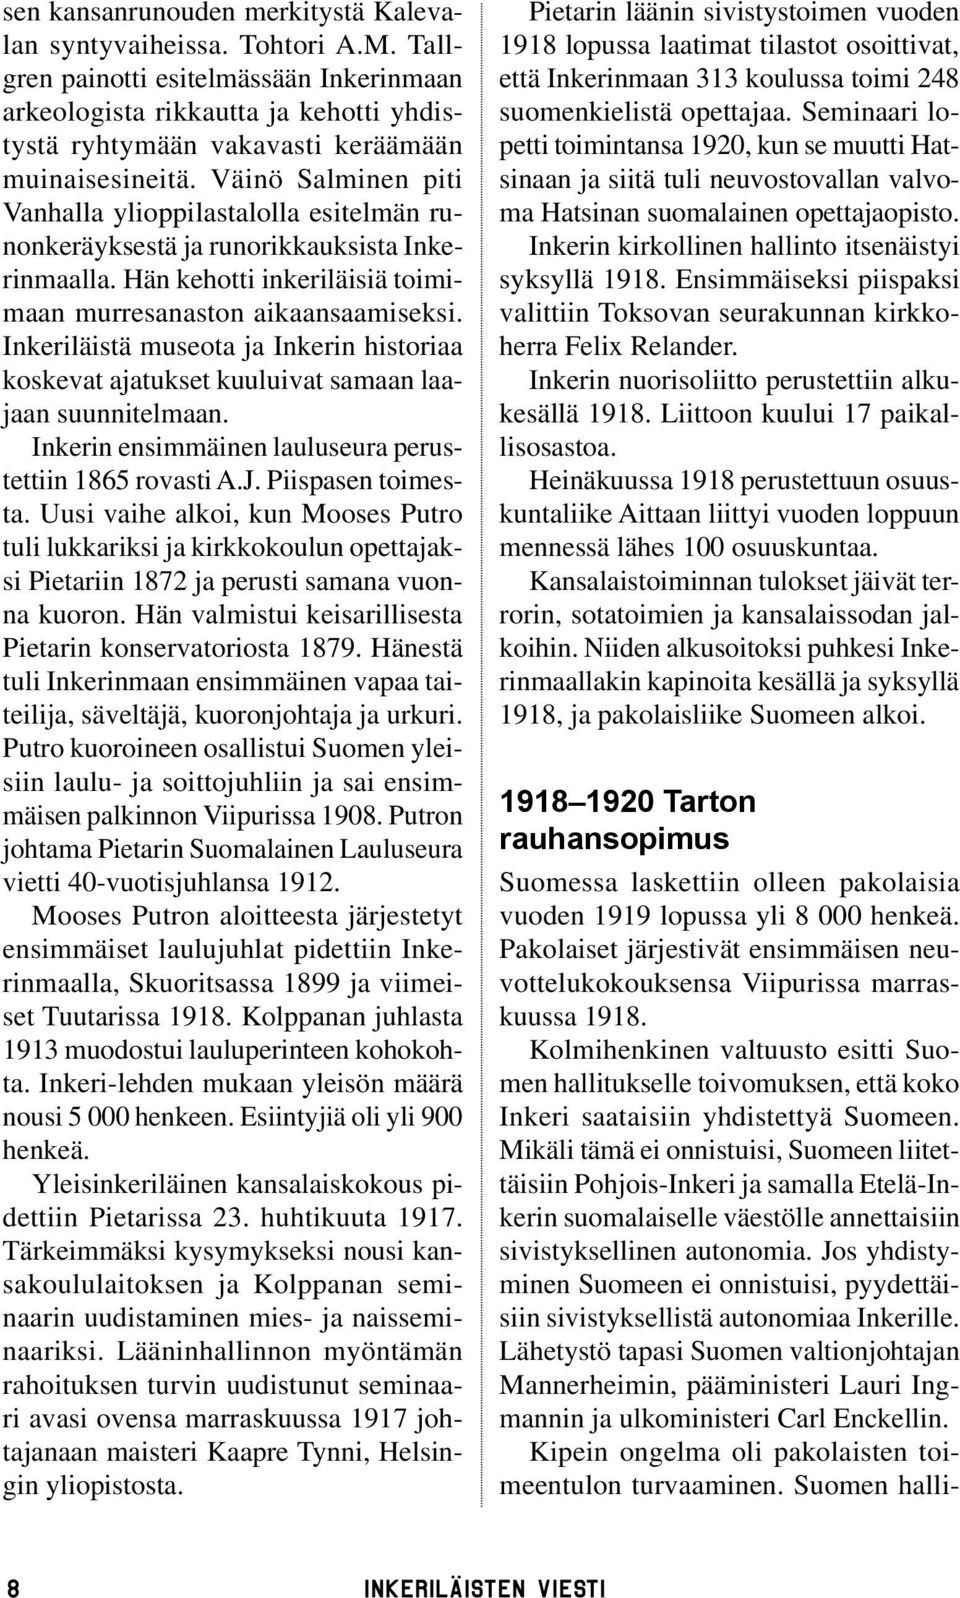 Väinö Salminen piti Vanhalla ylioppilastalolla esitelmän runonkeräyksestä ja runorikkauksista Inkerinmaalla. Hän kehotti inkeriläisiä toimimaan murresanaston aikaansaamiseksi.